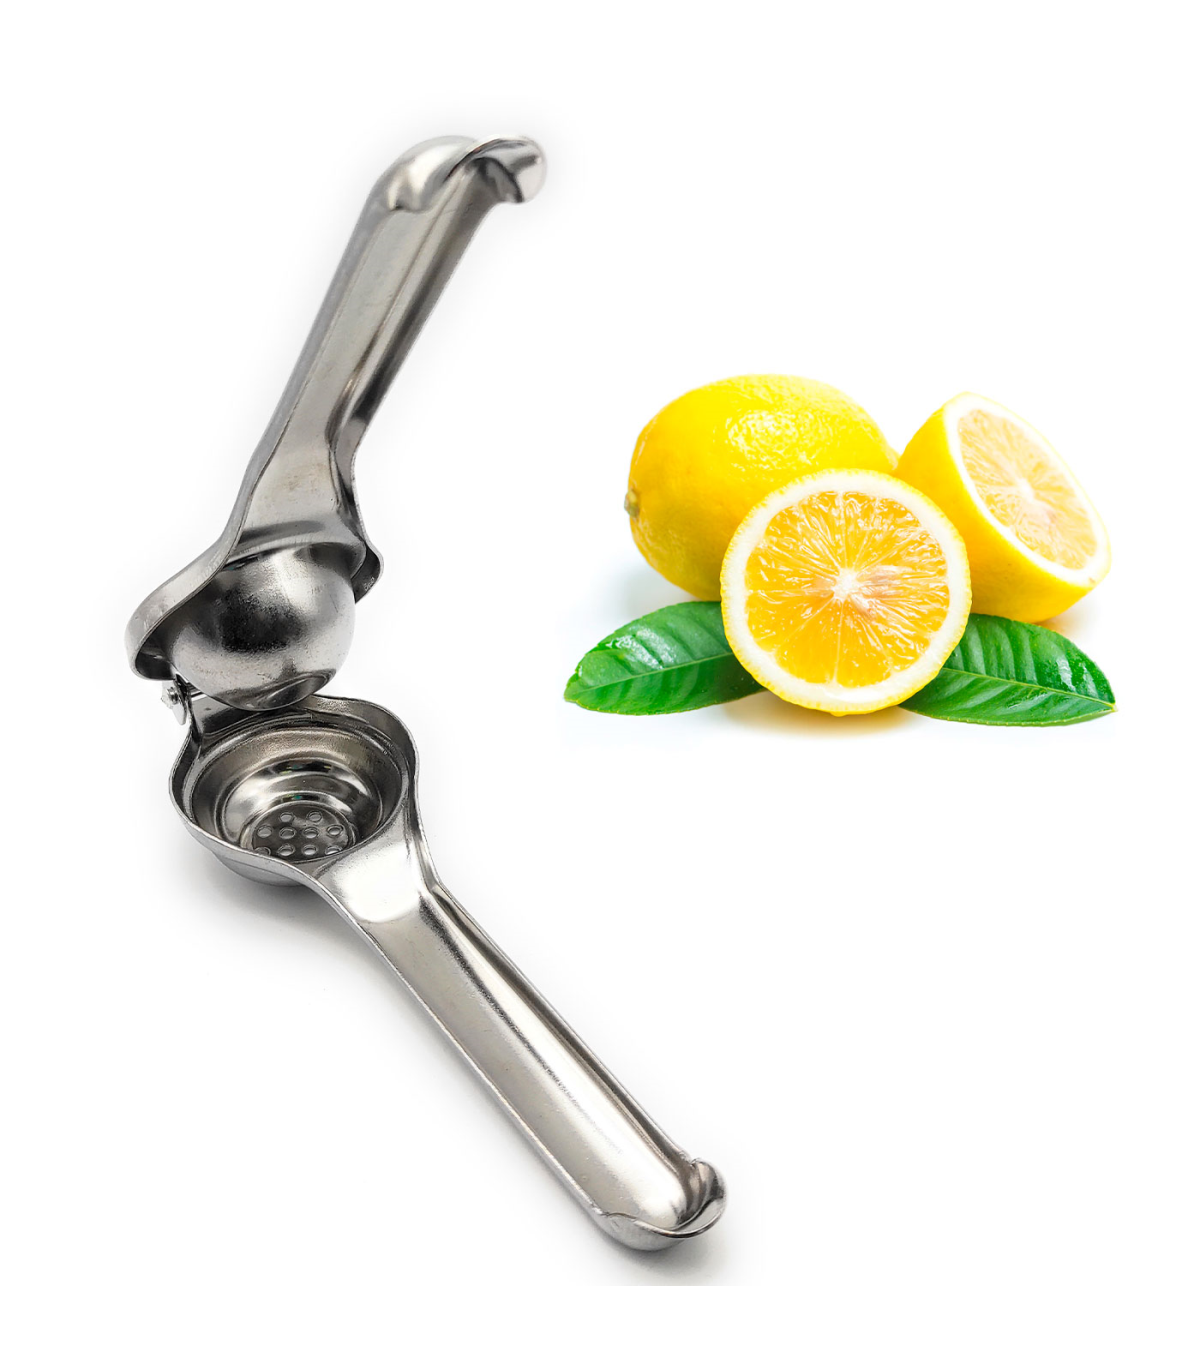 Tradineur - Exprimidor manual de limones, exprimidor de acero